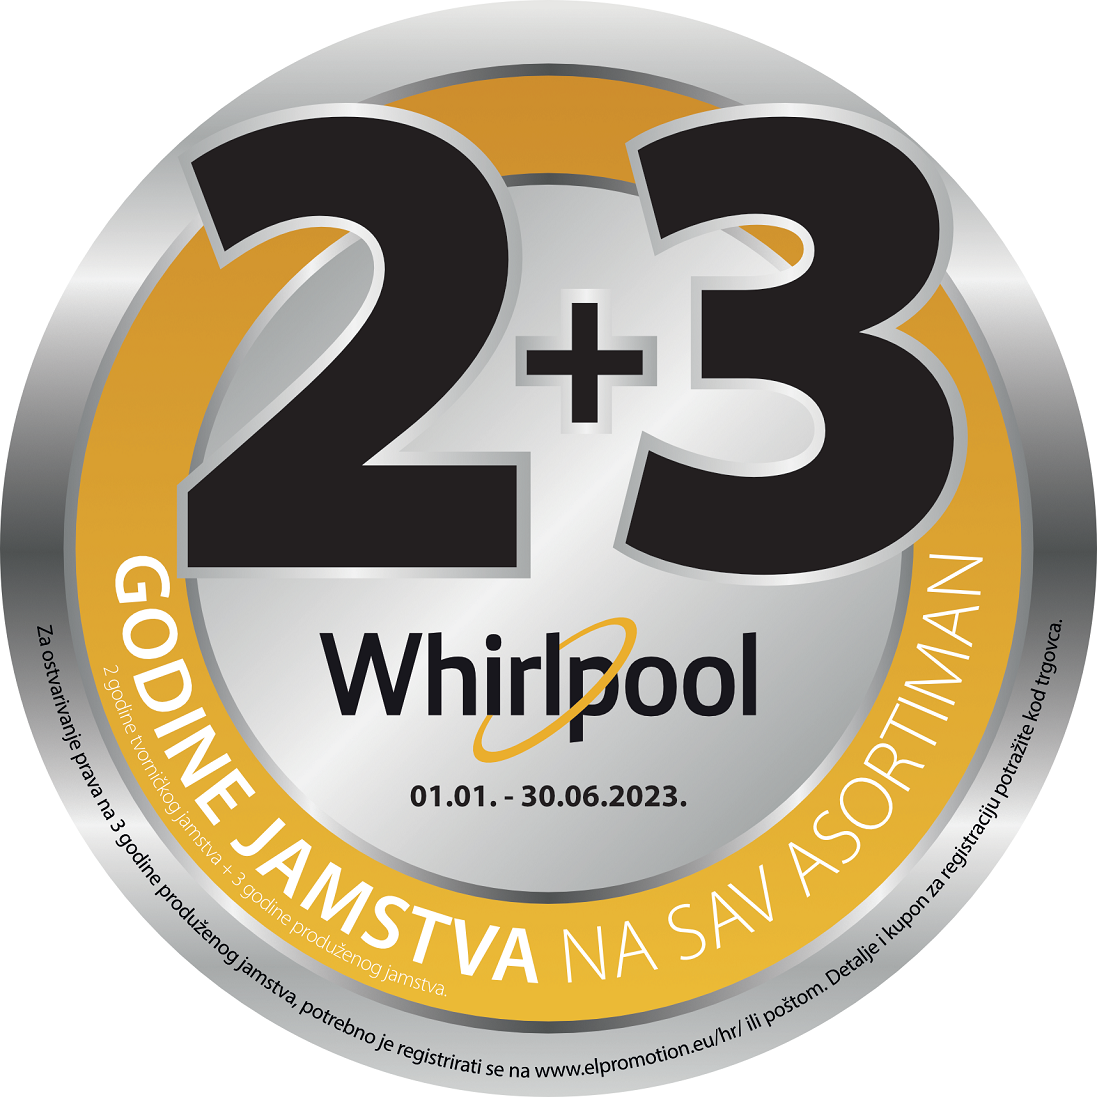 Whirlpool 2+3 godine garancije na sav asortiman uz obaveznu online prijavu